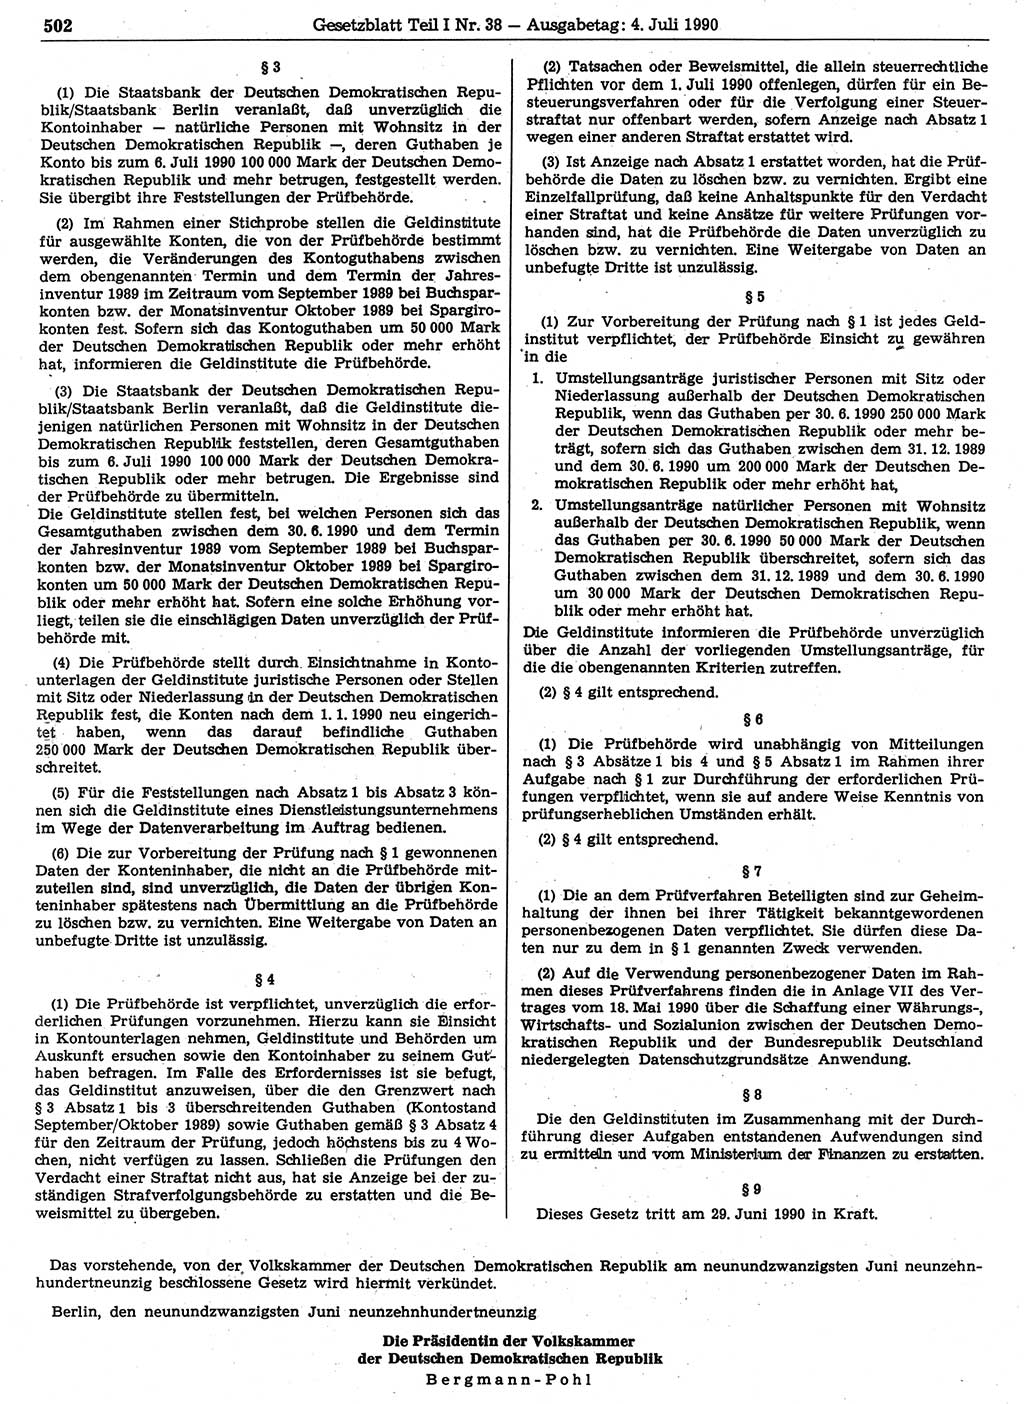 Gesetzblatt (GBl.) der Deutschen Demokratischen Republik (DDR) Teil Ⅰ 1990, Seite 502 (GBl. DDR Ⅰ 1990, S. 502)